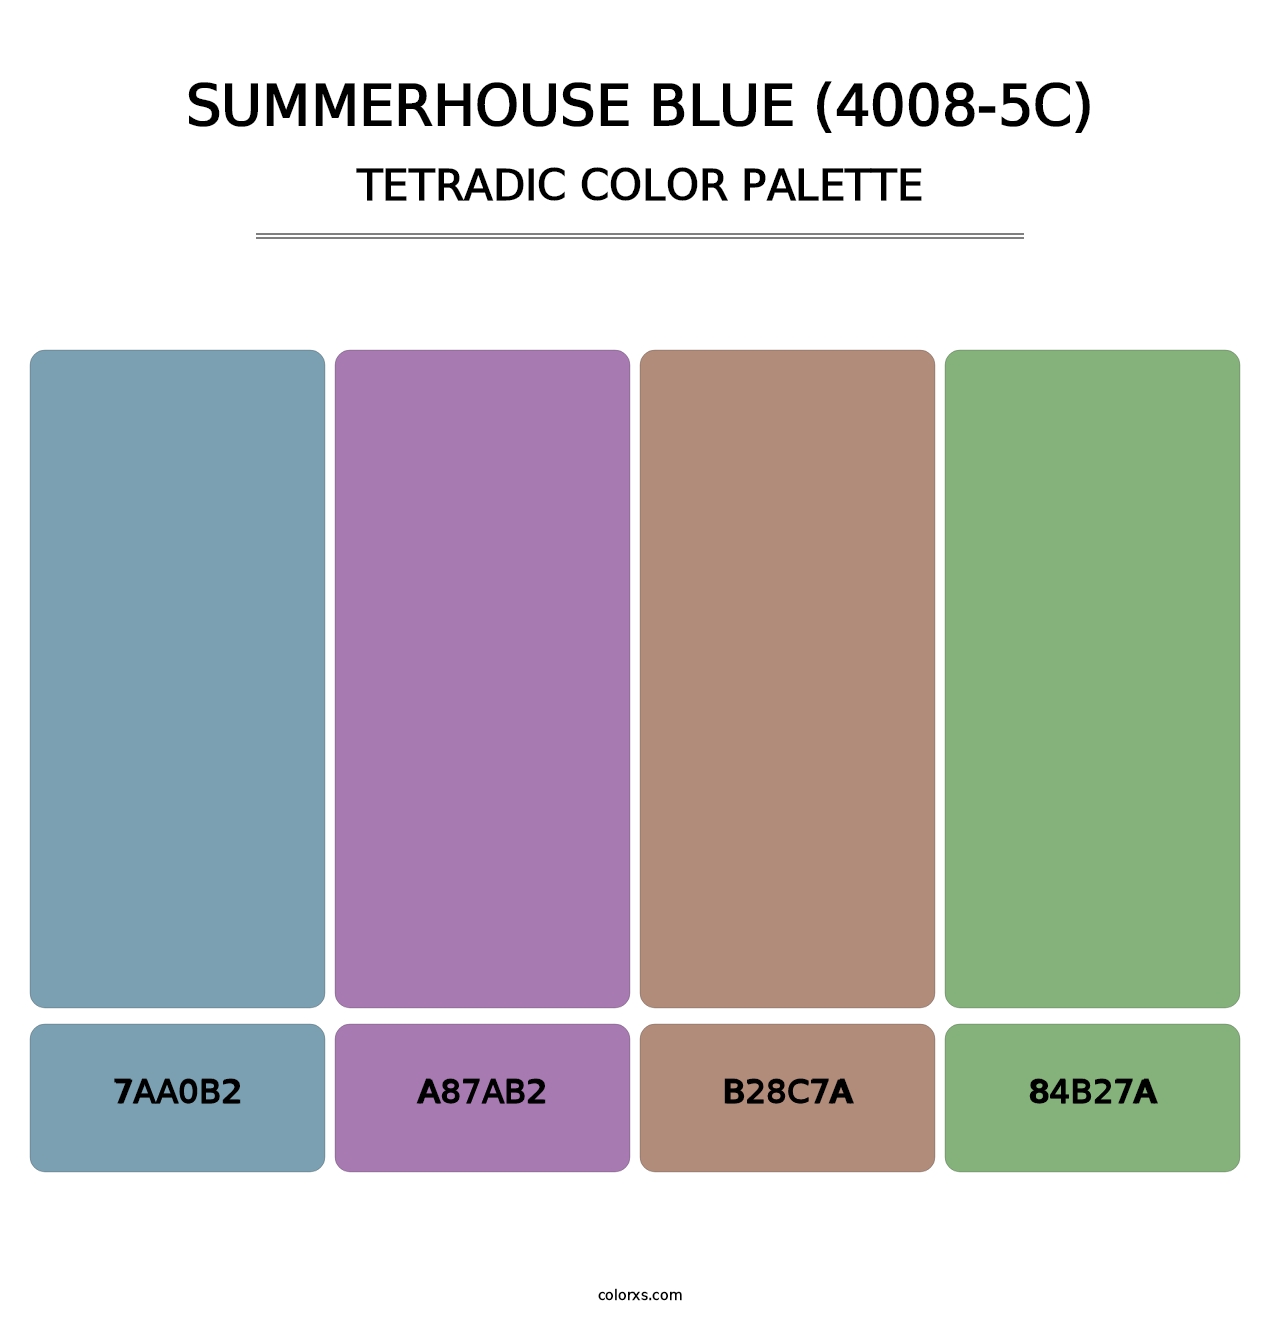 Summerhouse Blue (4008-5C) - Tetradic Color Palette